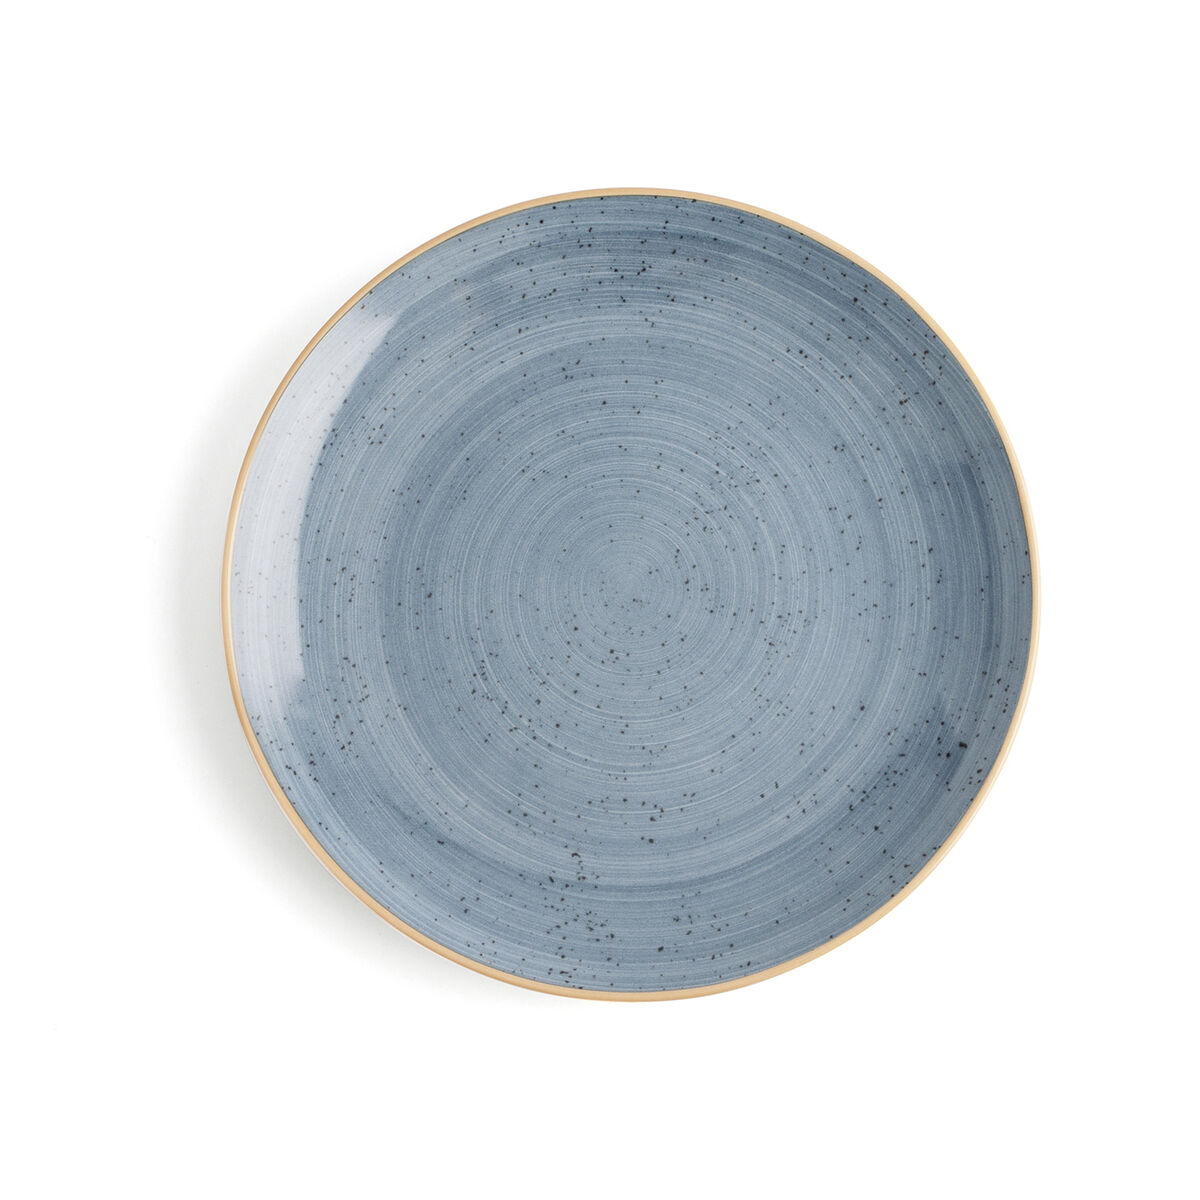 Piatto da pranzo Ariane Terra Azzurro Ceramica Ø 27 cm (6 Unità)